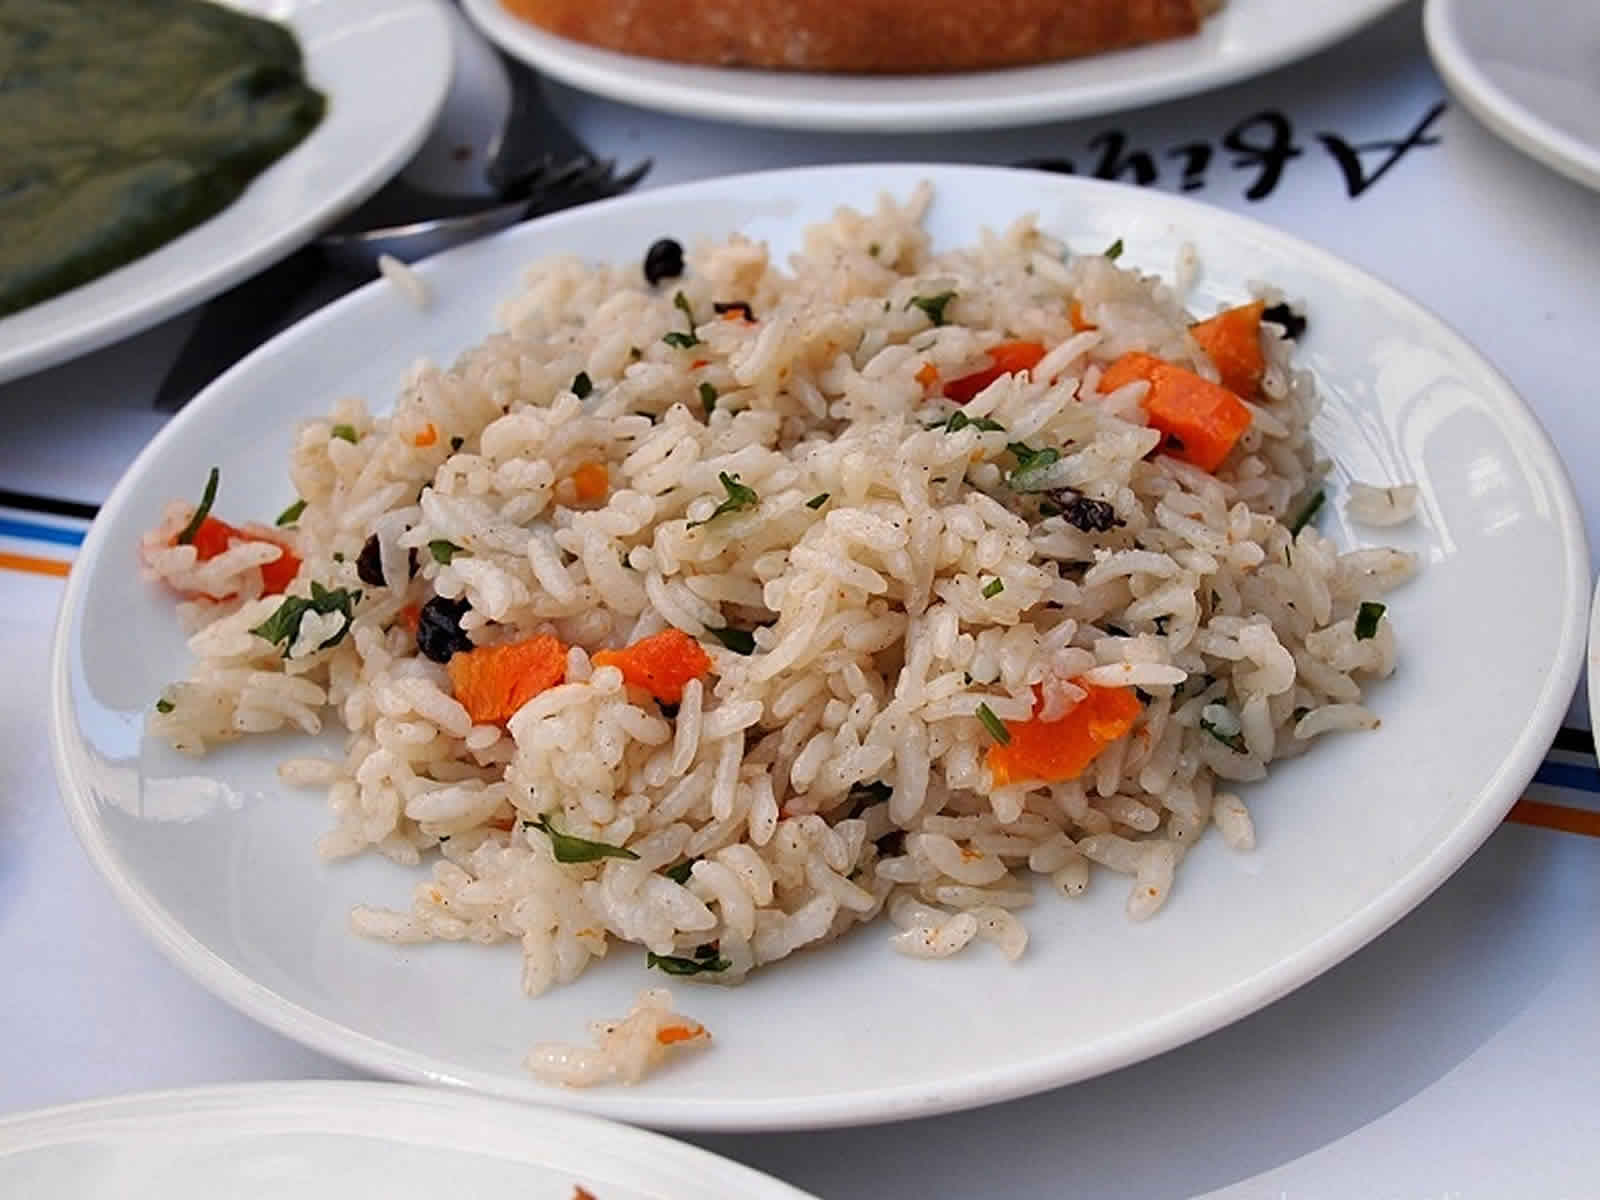 Sebzeli pilav – Rijst met groente